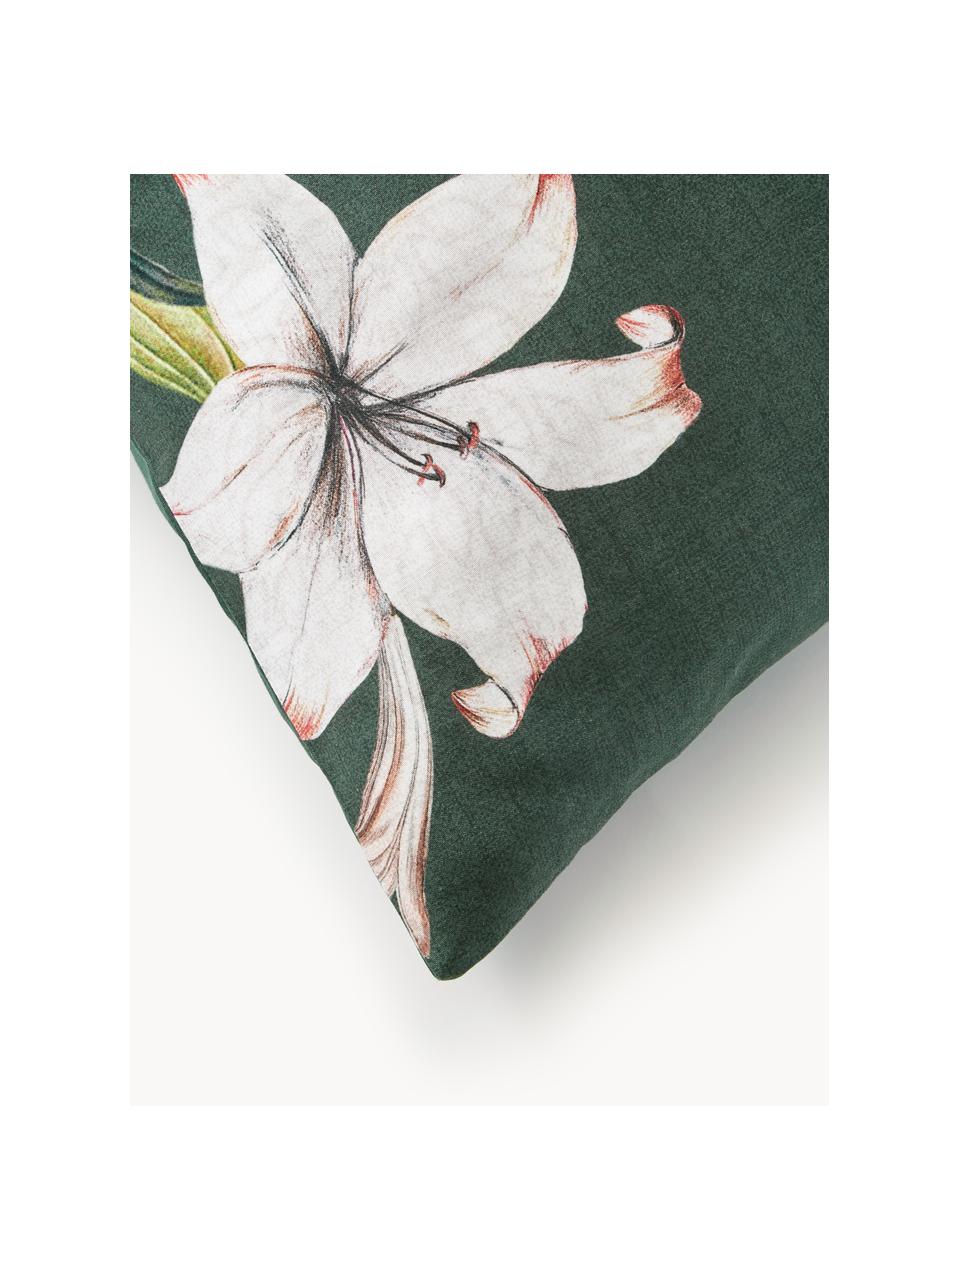 Funda de almohada de satén Flori, Verde oscuro, beige, An 45 x L 110 cm